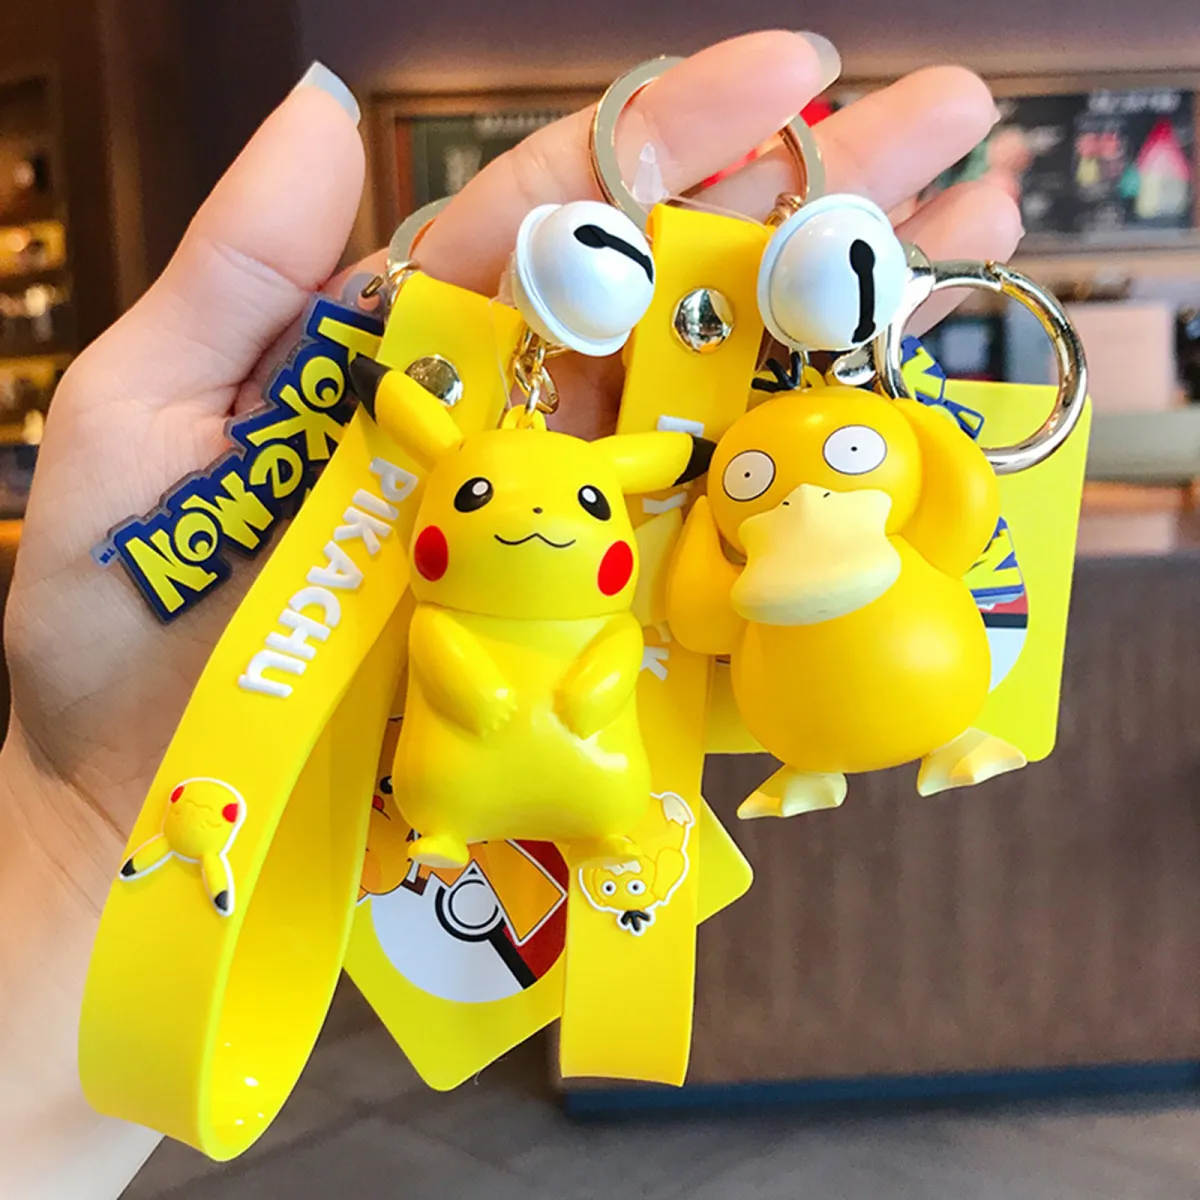 Móc khóa Pokemon Pikachu: Bạn là người yêu thích Pokemon và Pikachu? Bạn muốn sở hữu một chiếc móc khóa Pikachu xinh xắn để sử dụng hàng ngày? Hãy đến và xem bộ sưu tập các móc khóa Pokemon dễ thương và độc đáo của chúng tôi ngay.